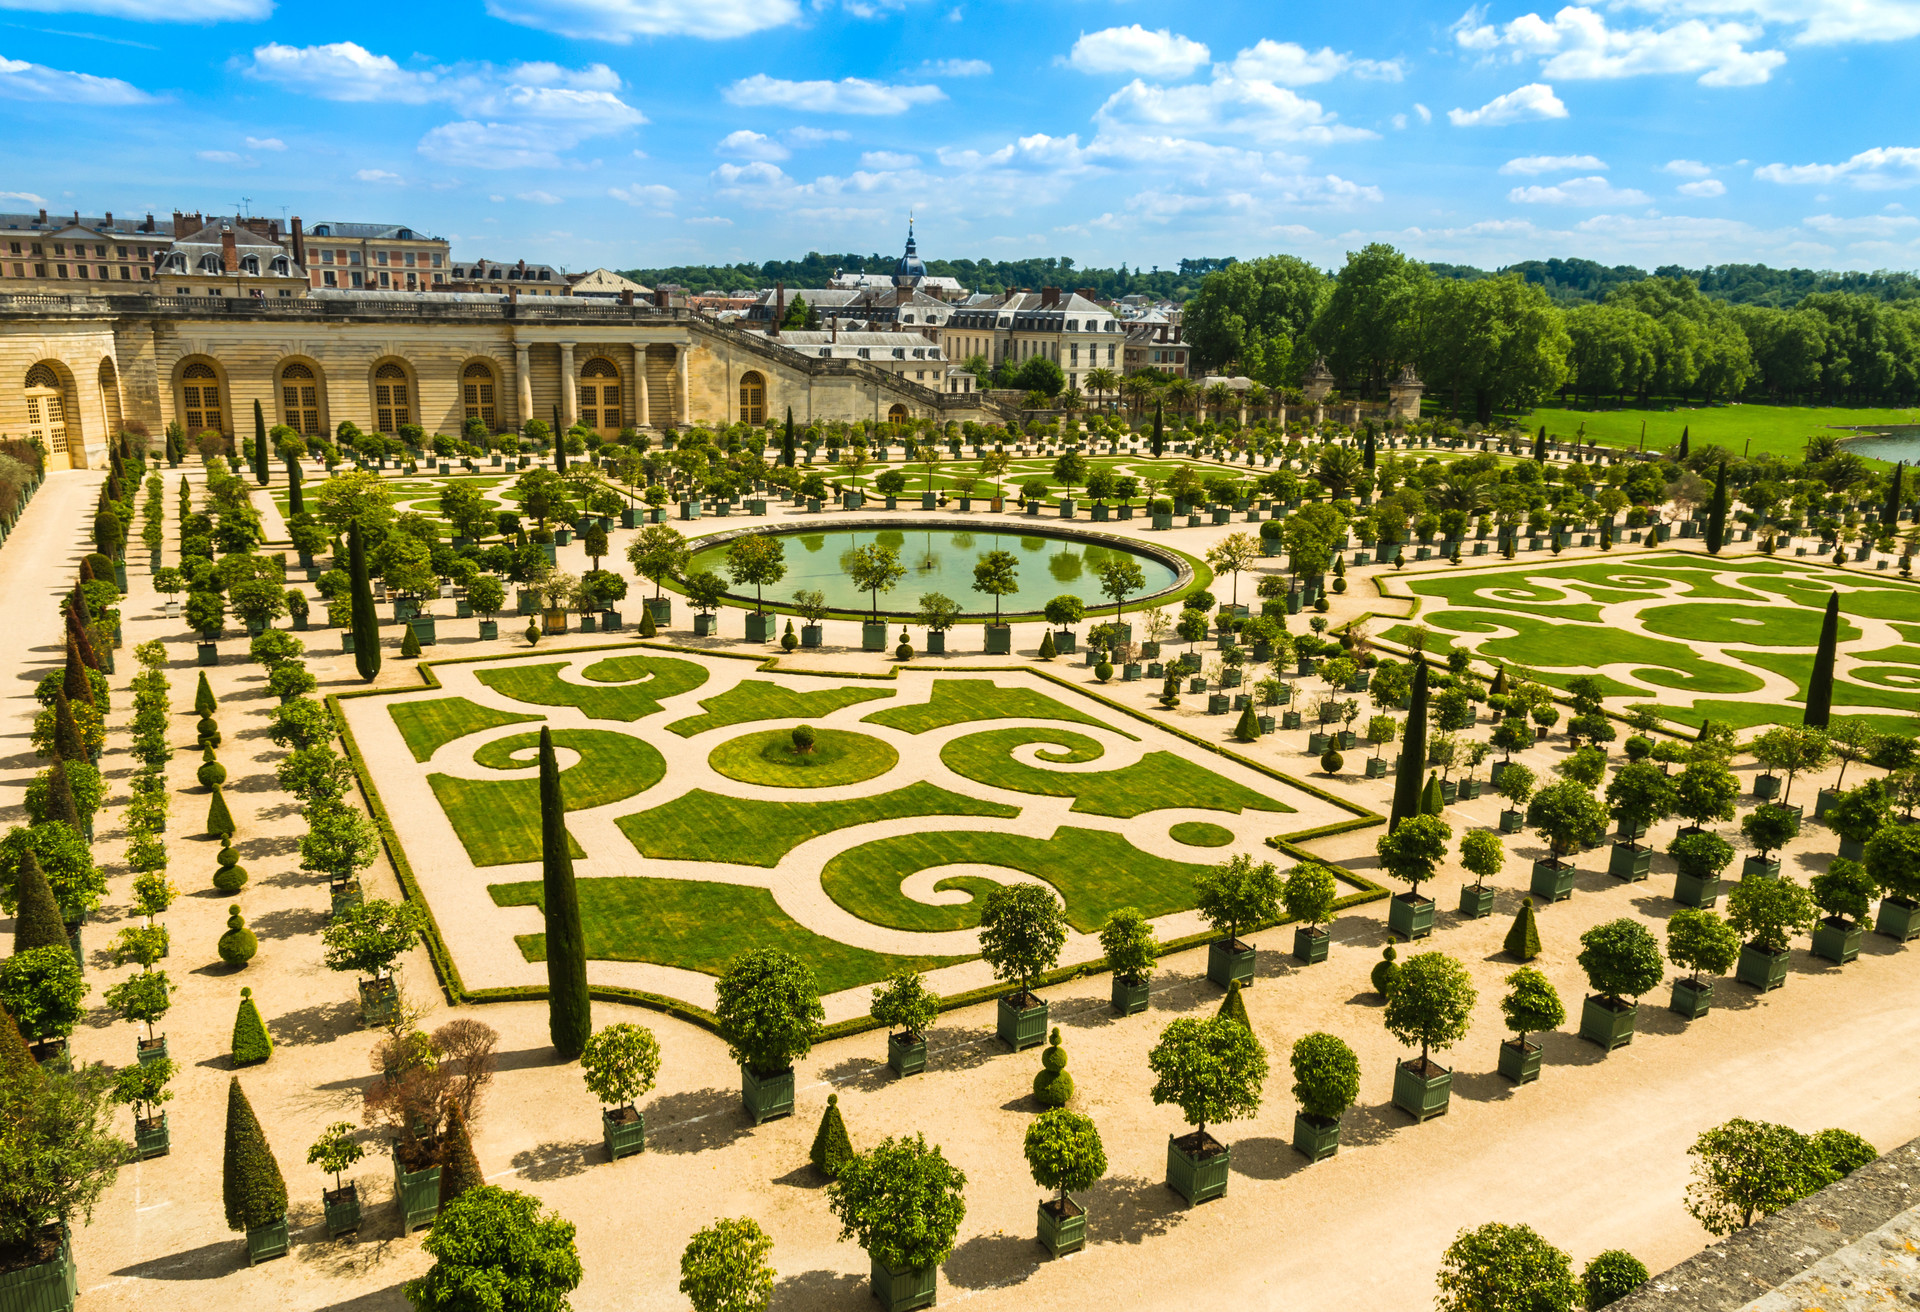 El barroco Palacio de Versalles a las afueras de París: en aquella época sentían debilidad por lo recargado